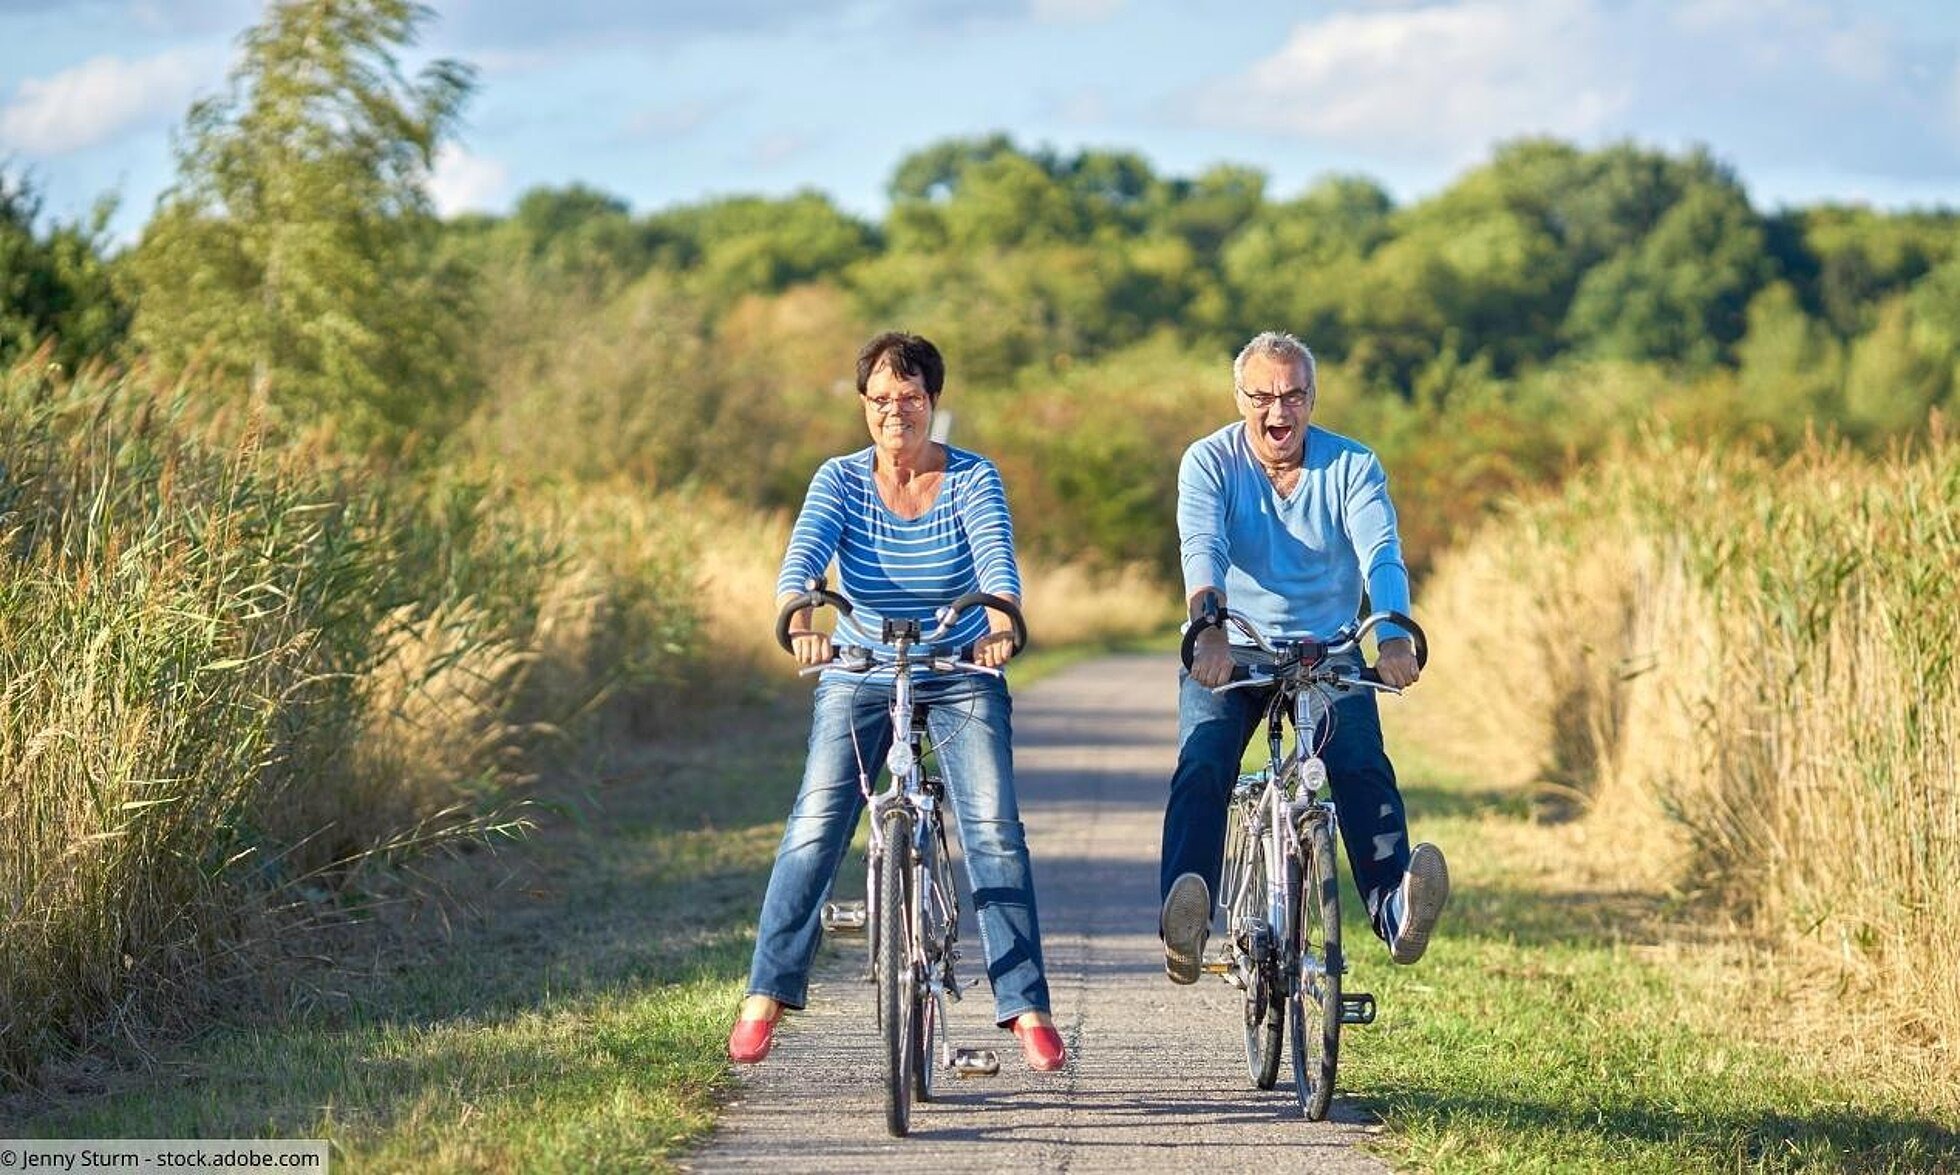 Gesund aktiv älter werden: Warum tut Bewegung gut?